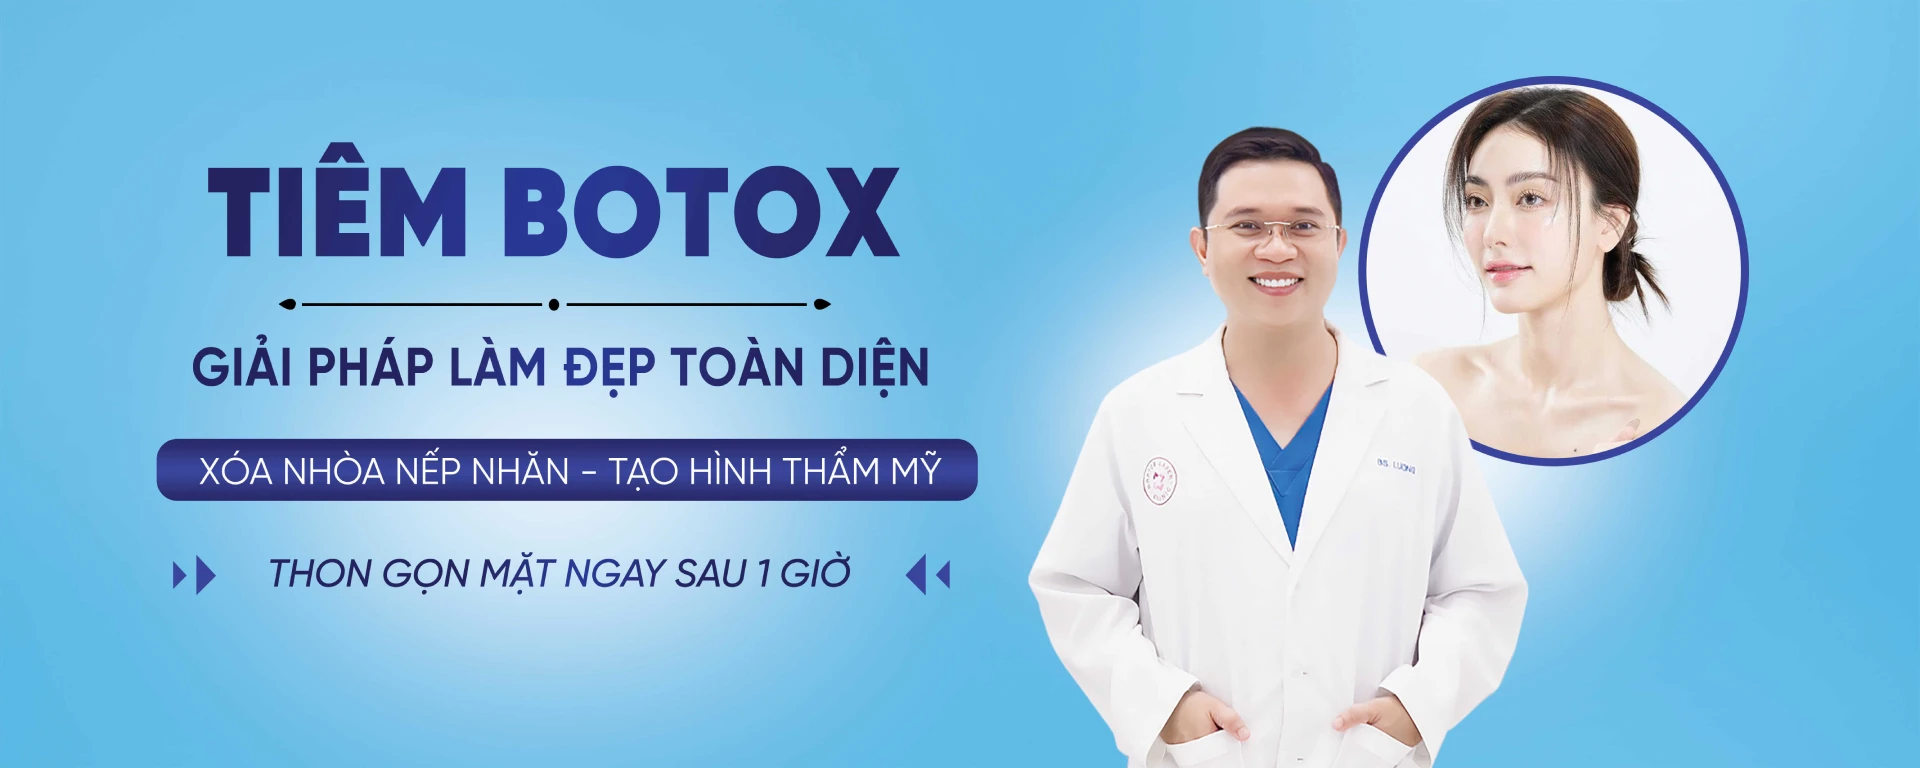 Tiêm Botox Bác sĩ Lương